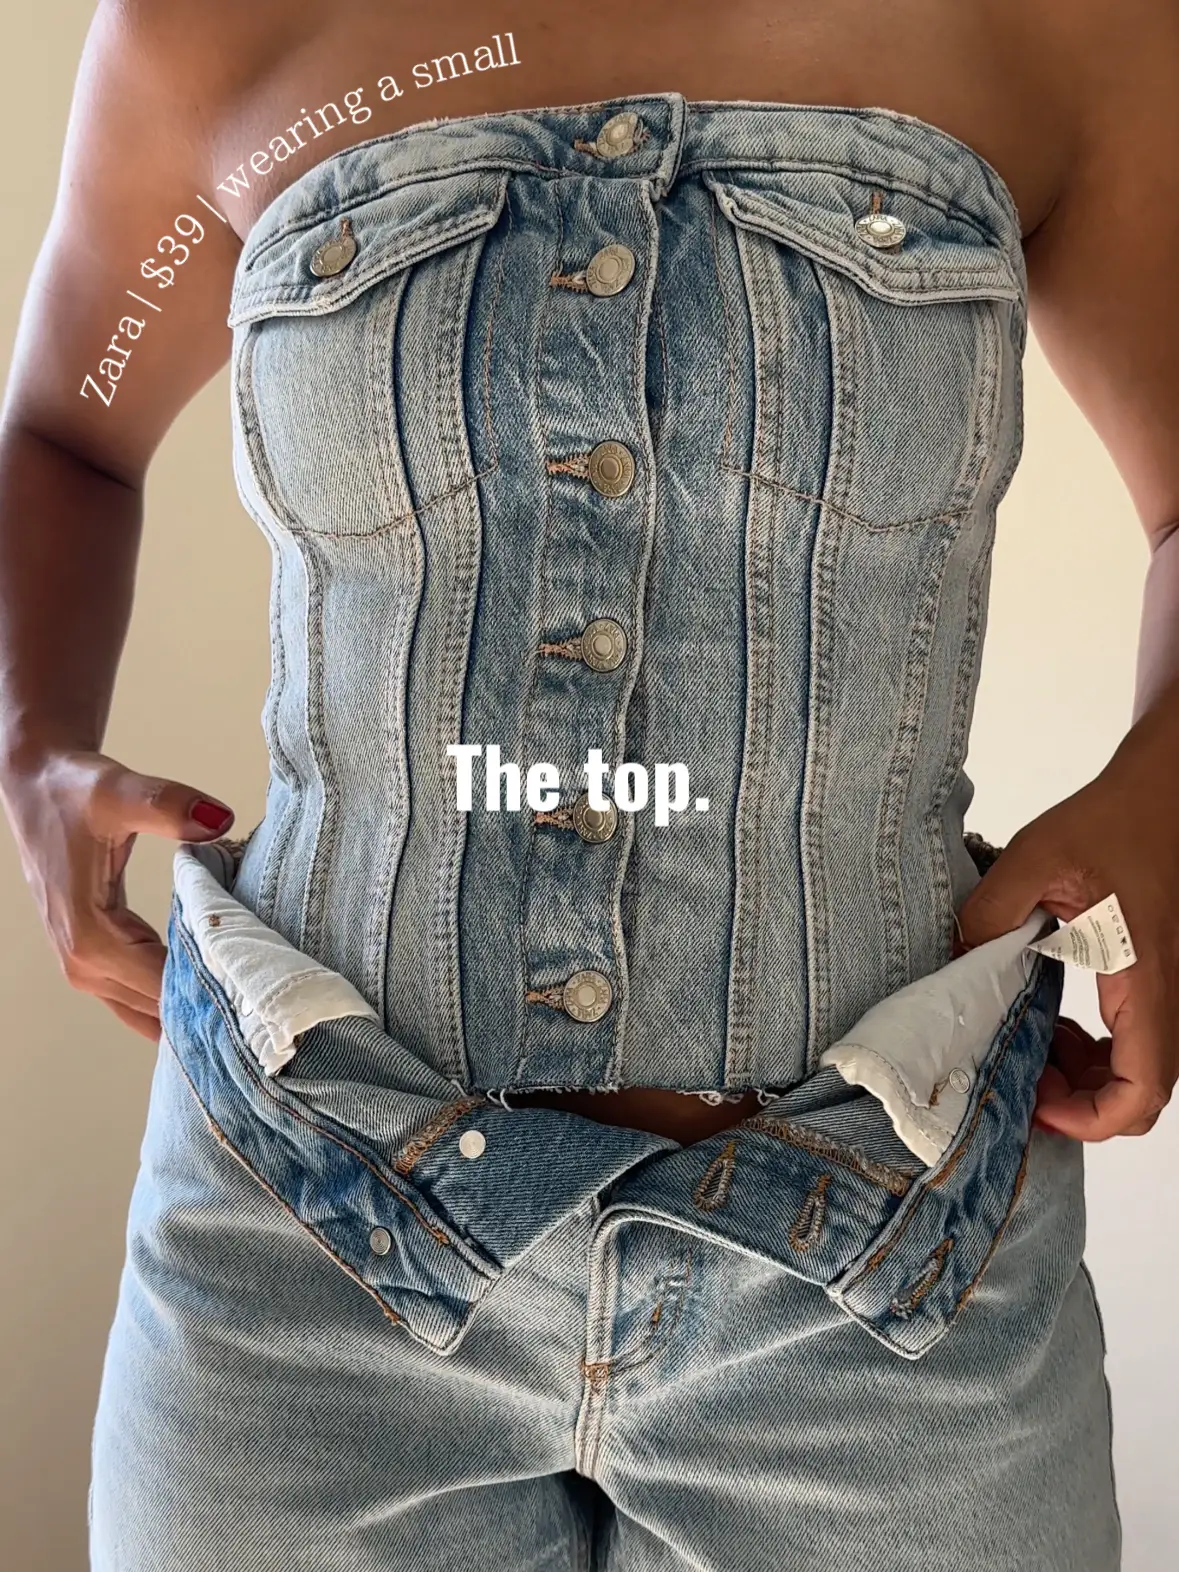 Aesthetic Mood Board🤍💙 on Instagram: “do you like corset tops